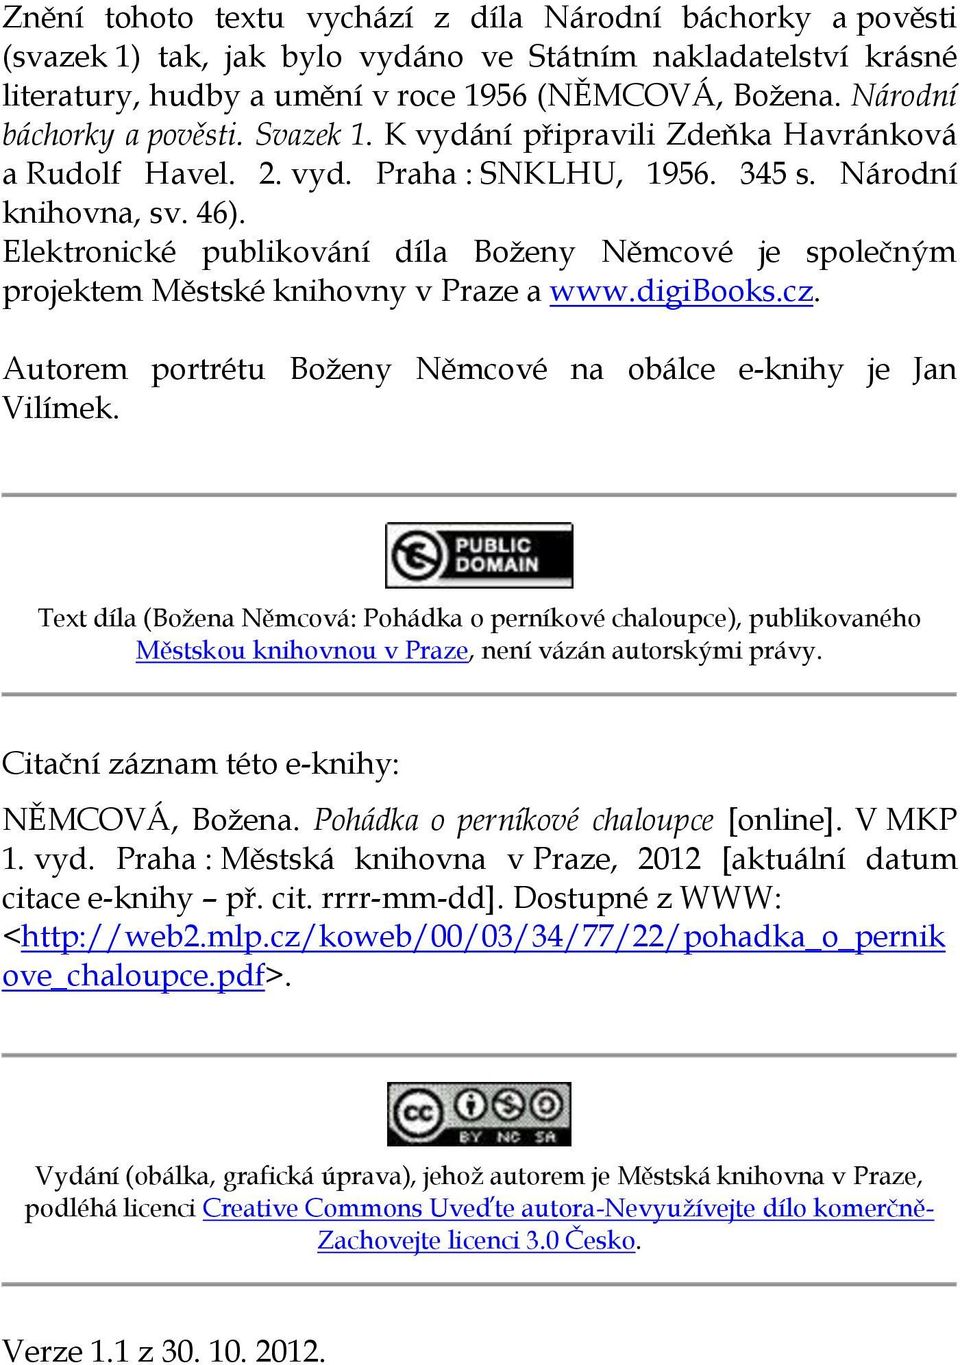 Elektronické publikování díla Boženy Němcové je společným projektem Městské knihovny v Praze a www.digibooks.cz. Autorem portrétu Boženy Němcové na obálce e-knihy je Jan Vilímek.